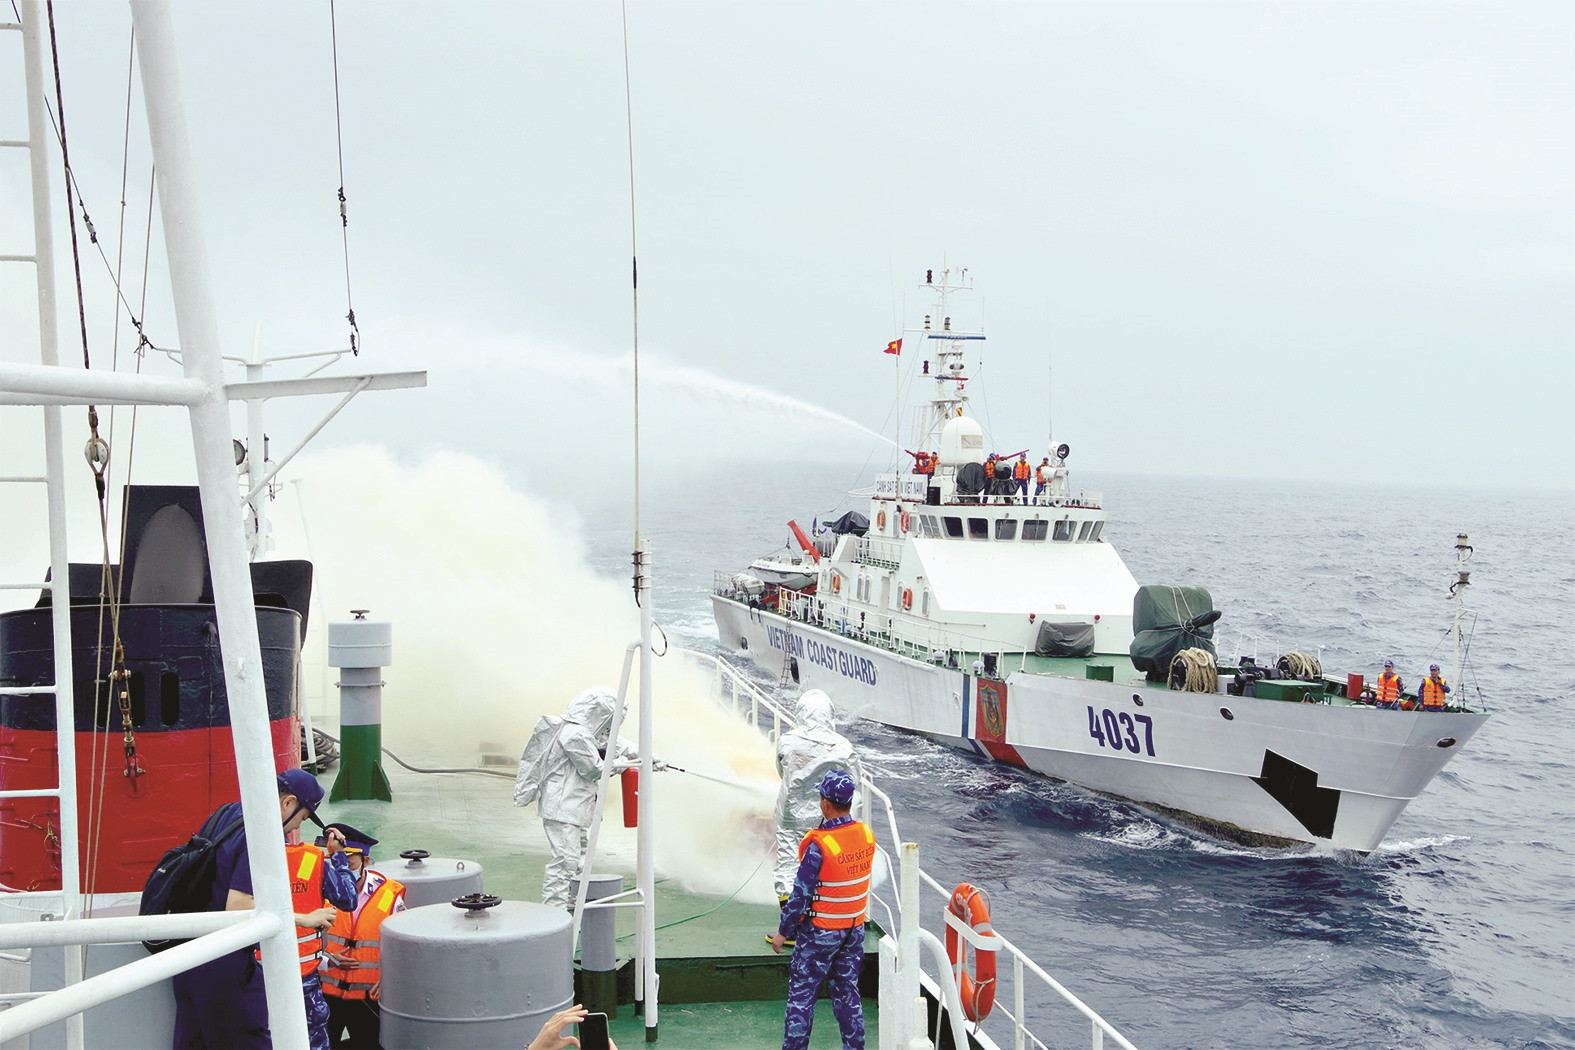 Bộ Tư lệnh Vùng Cảnh sát biển 2 phối hợp luyện tập tìm kiếm cứu nạn và phòng chống cháy nổ với tàu SETTSU của lực lượng Bảo vệ bờ biển Nhật Bản.